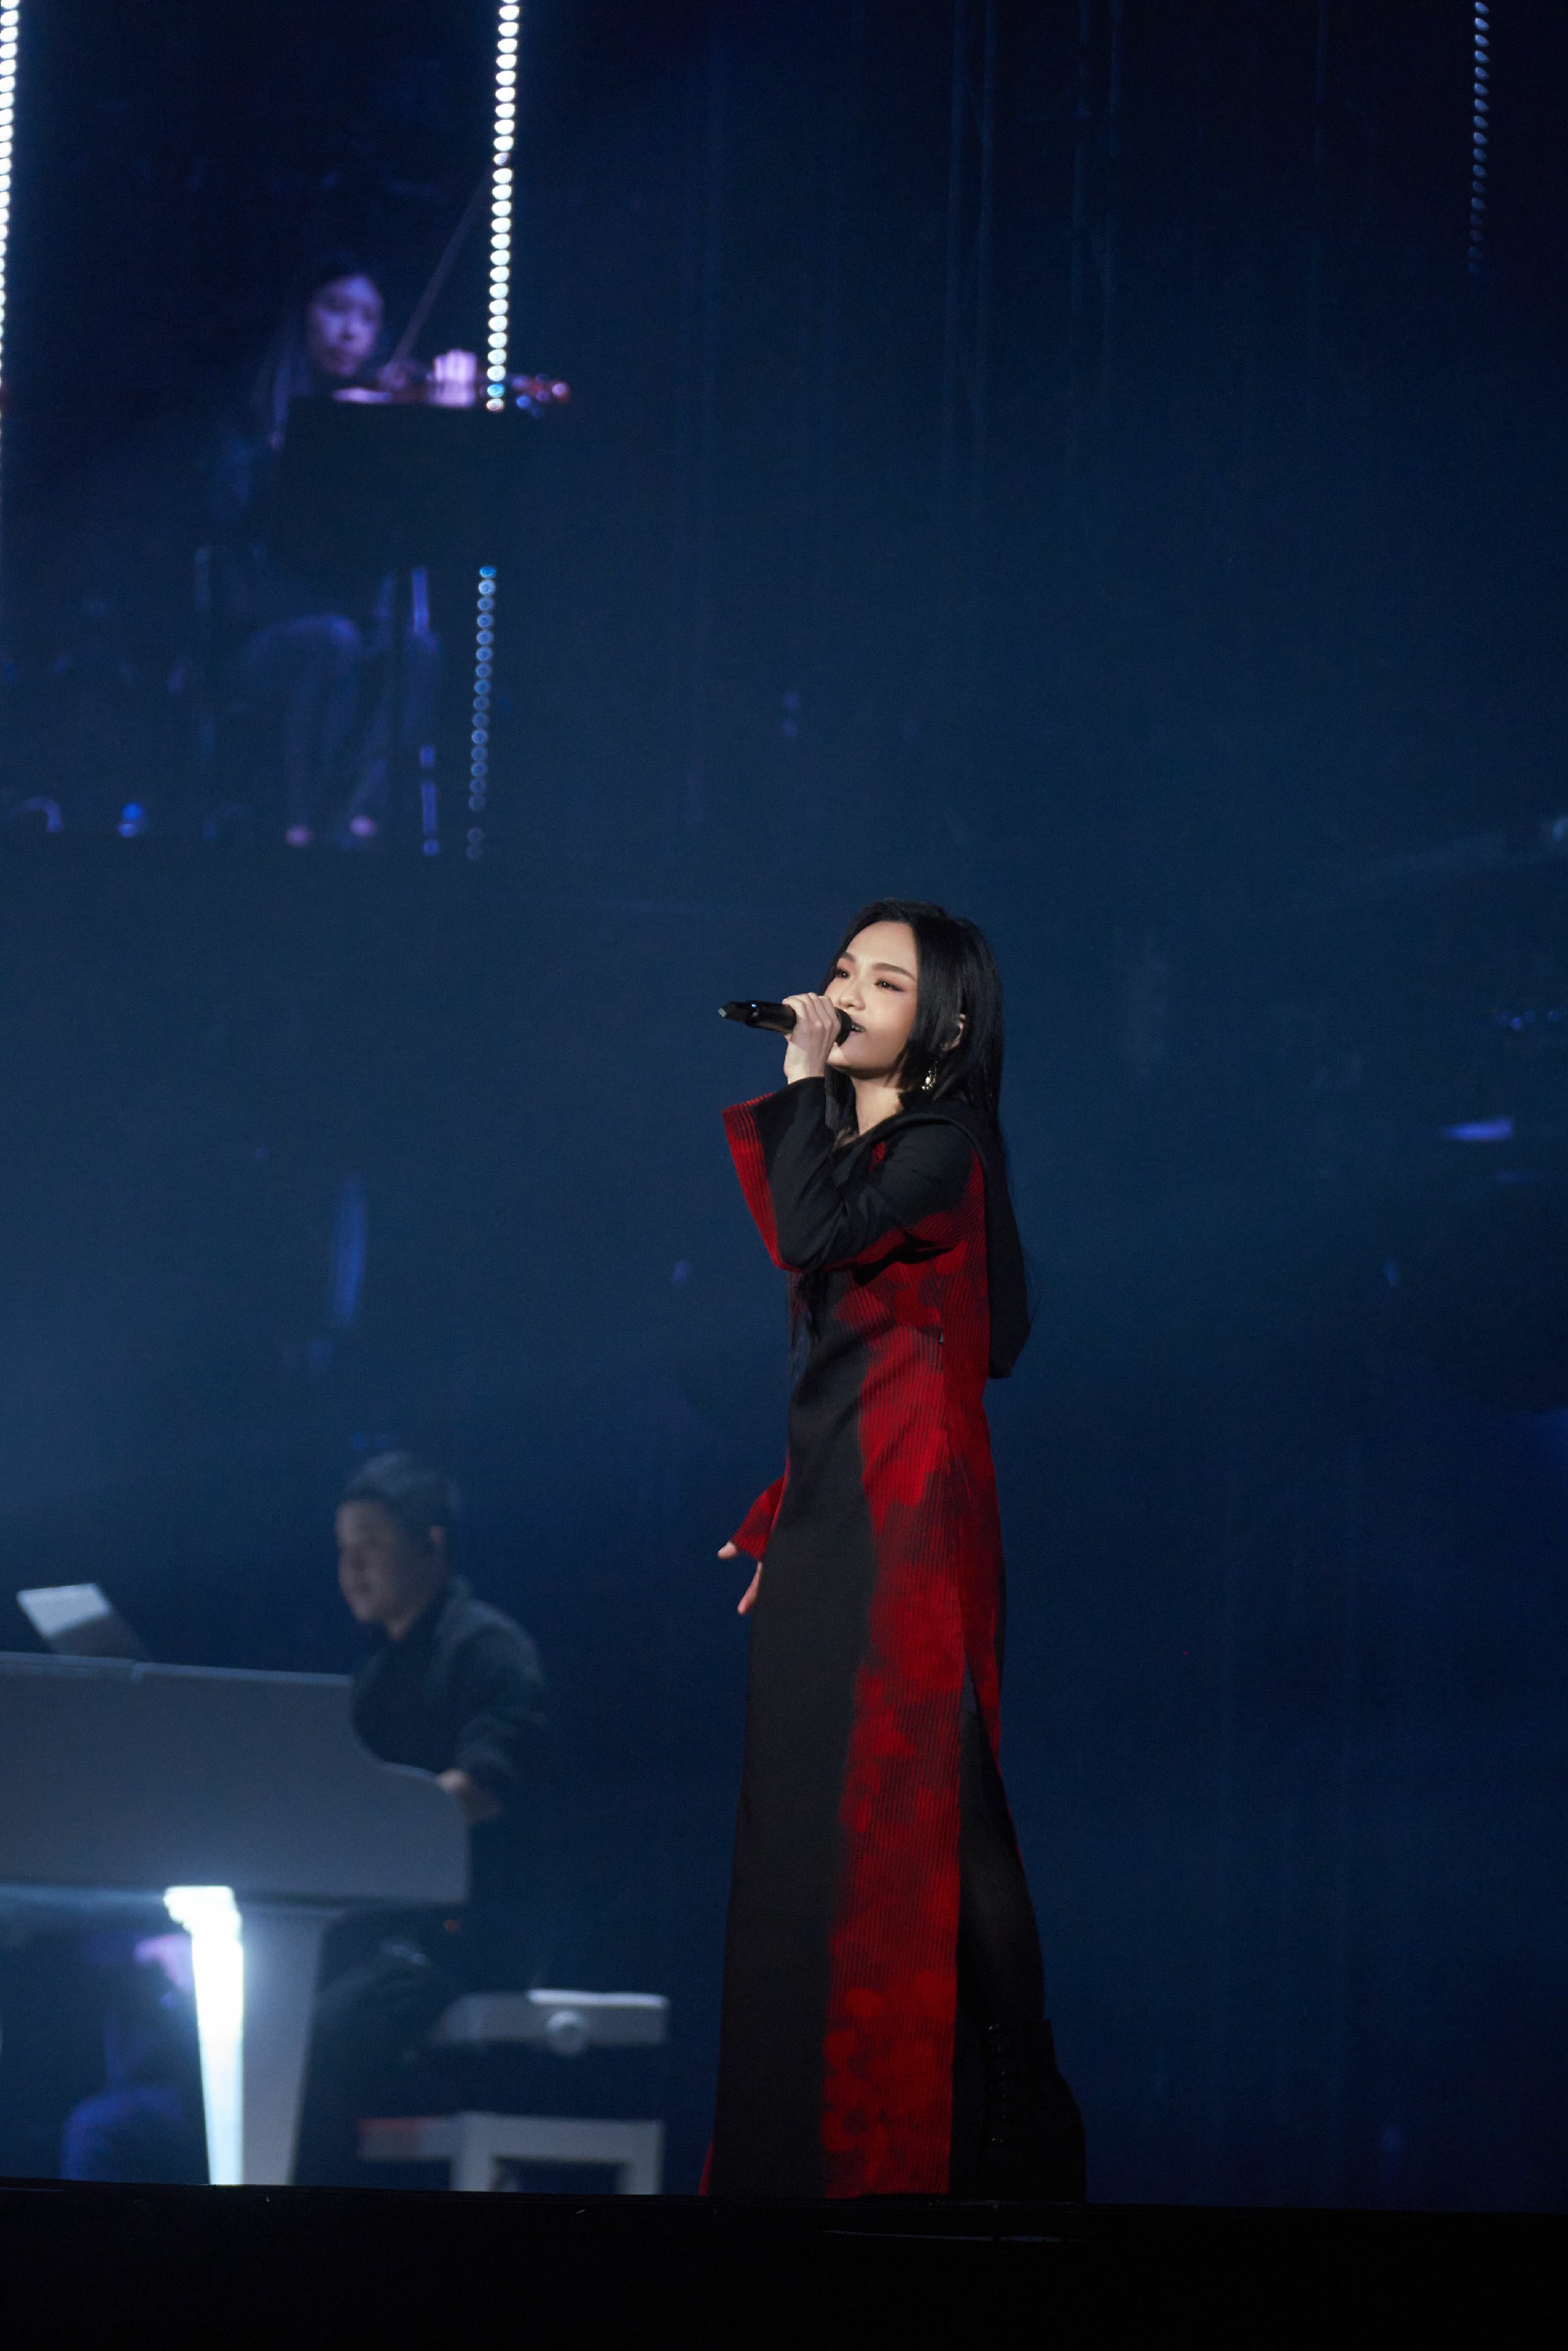 徐佳莹变得有些奢侈的事巡回演唱会台北场连续两天小巨蛋开唱